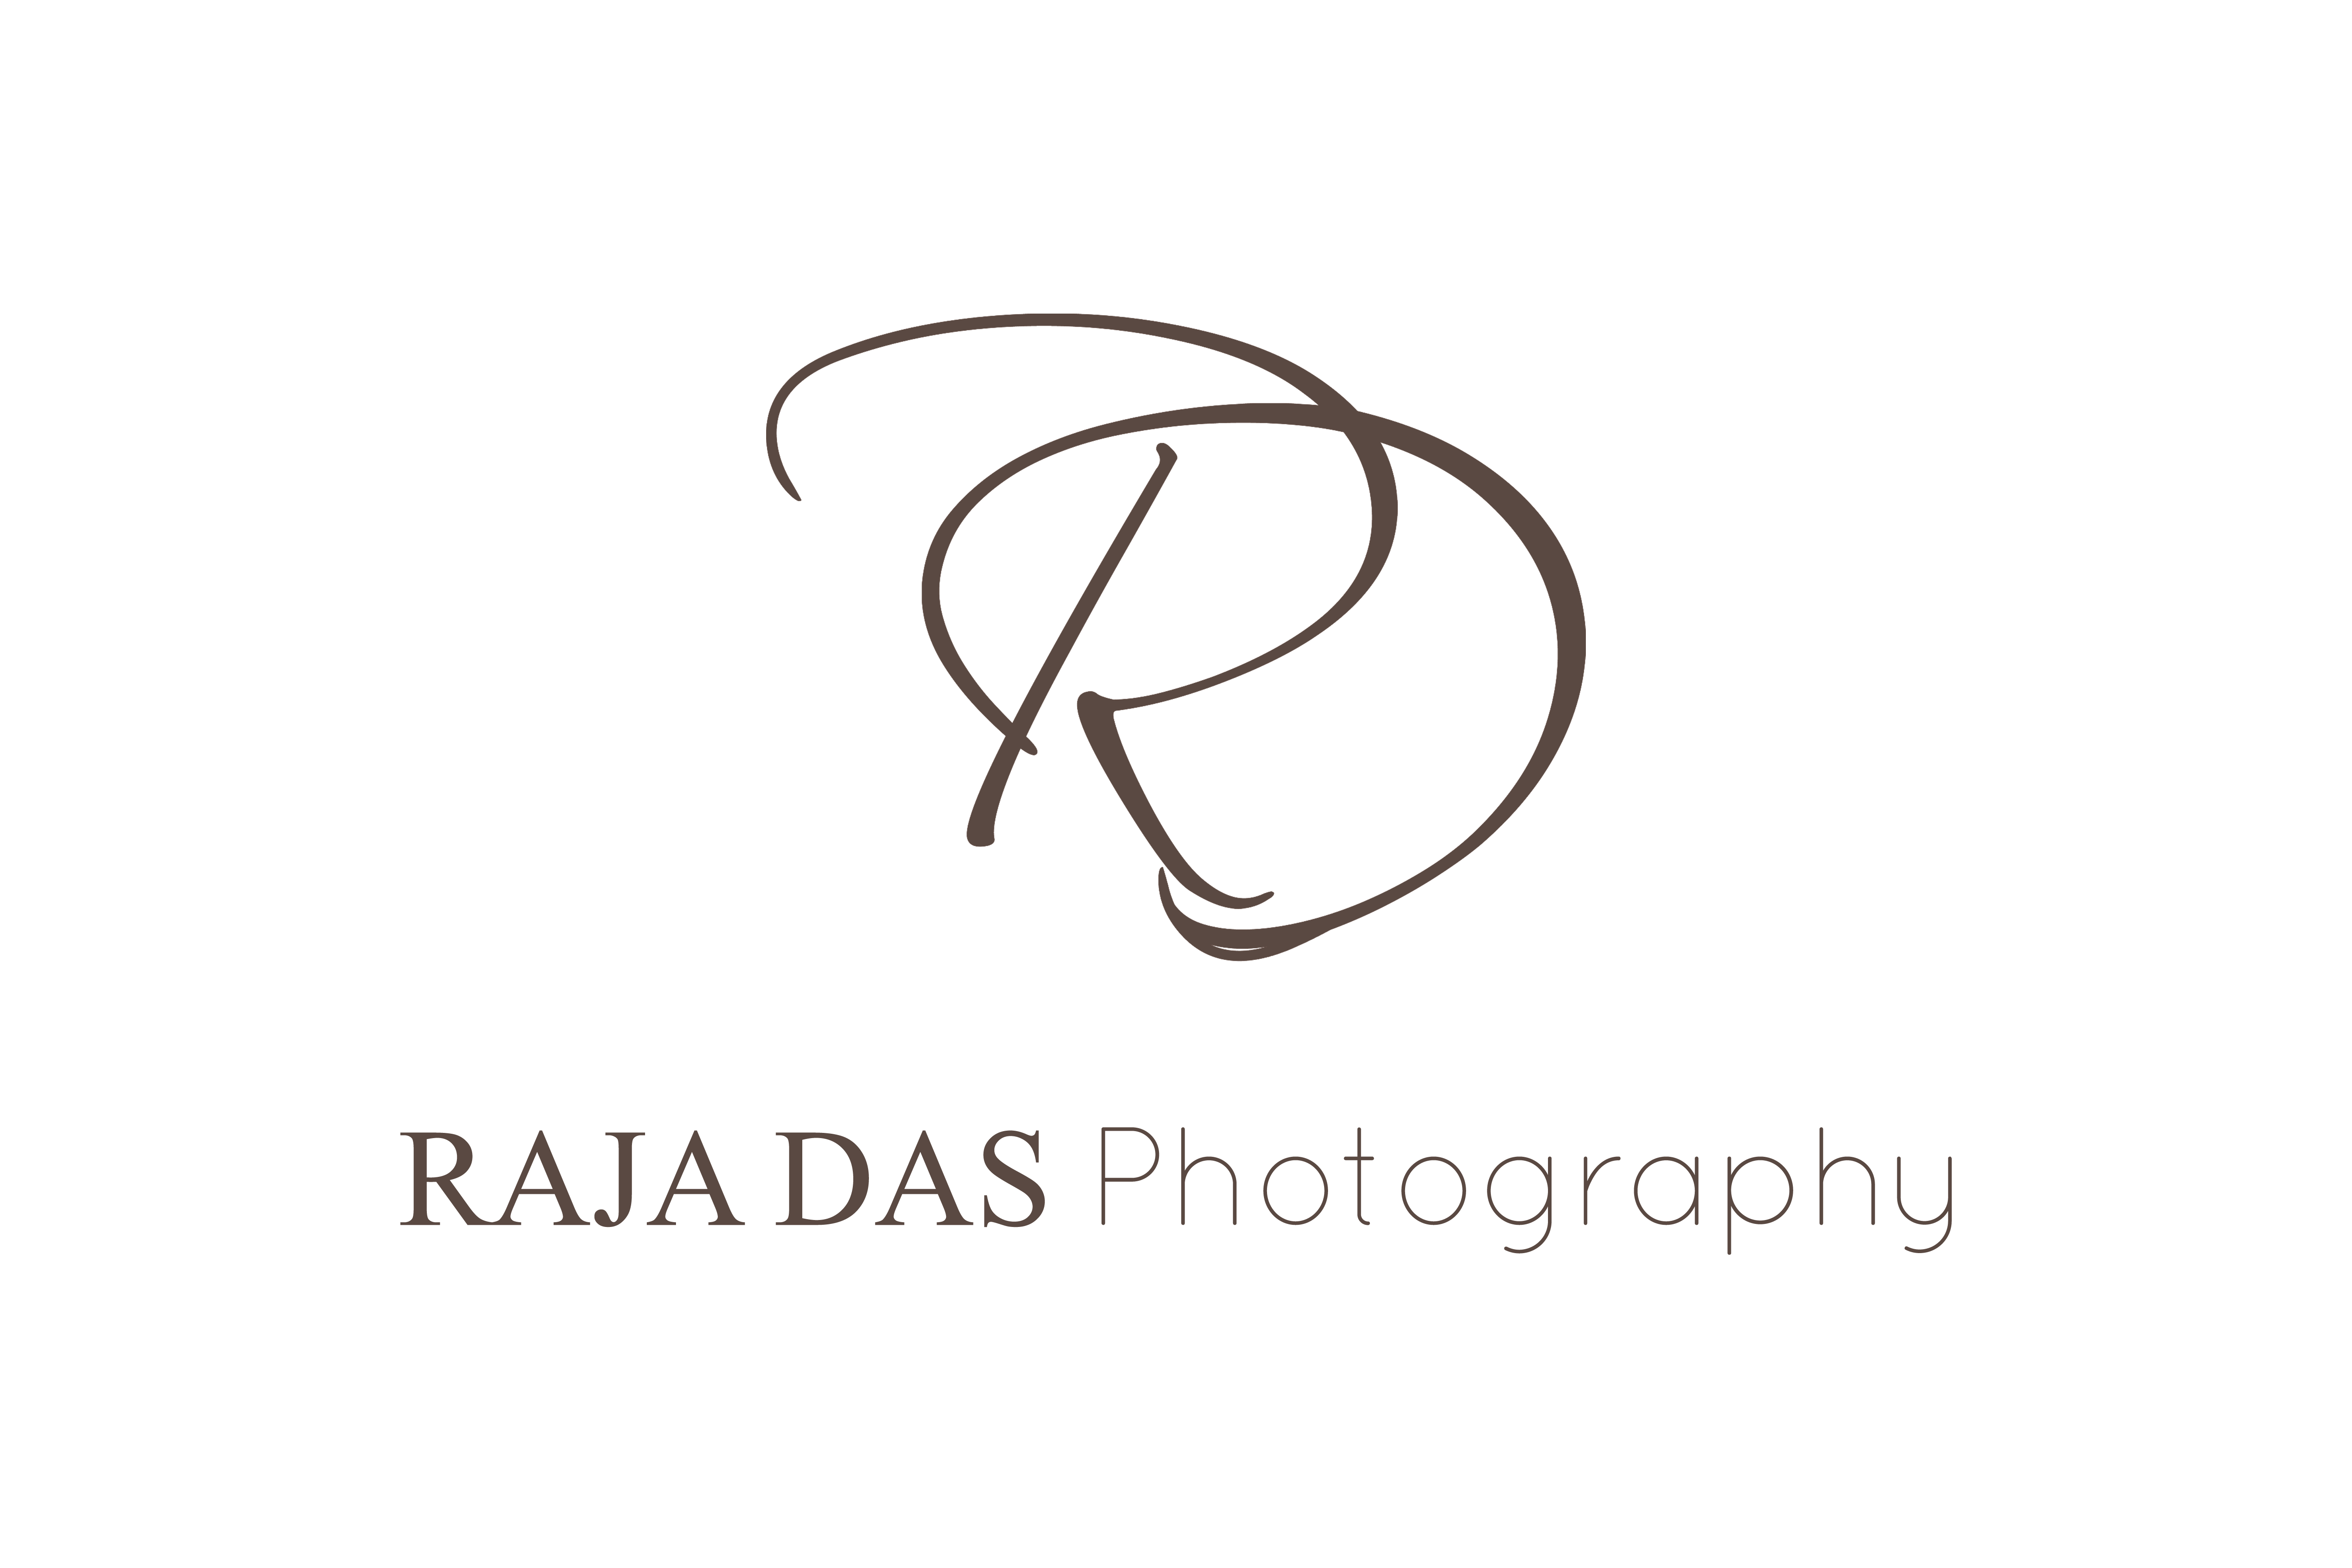 Raja Das Photography